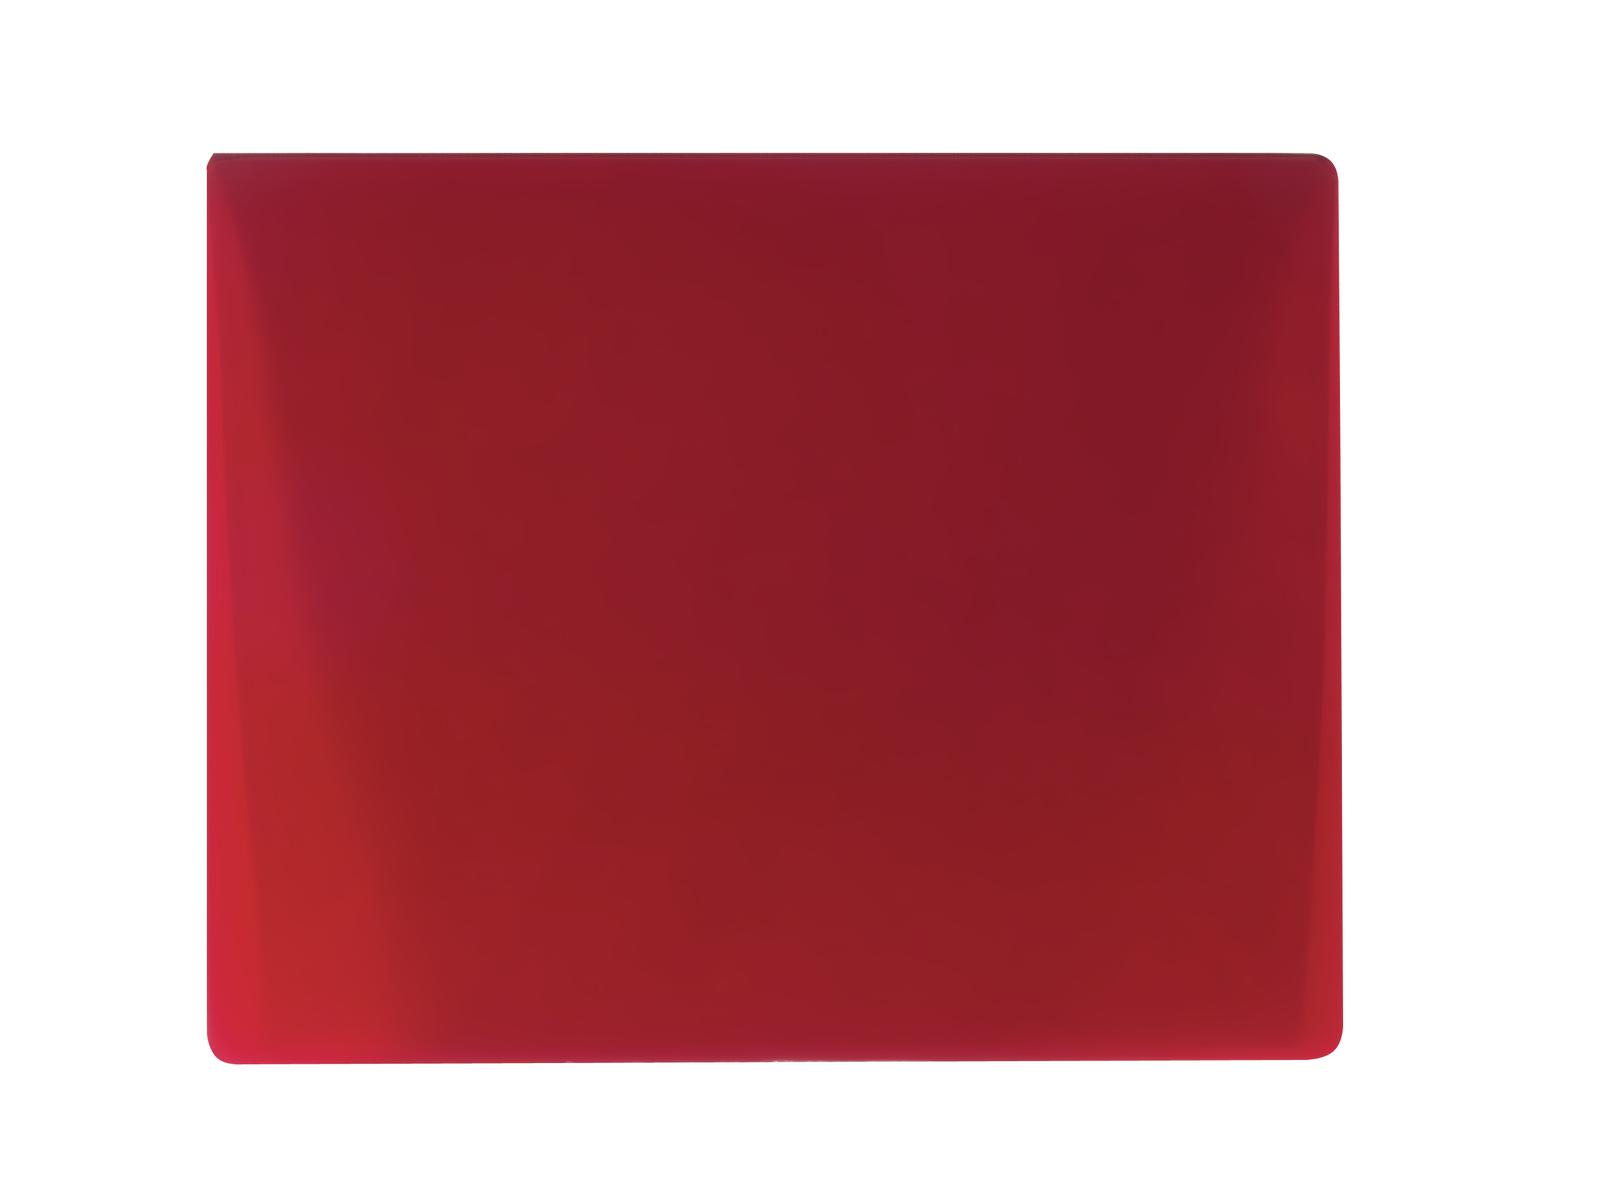 EUROLITE Farbglas für Fluter, rot, 165x132mm